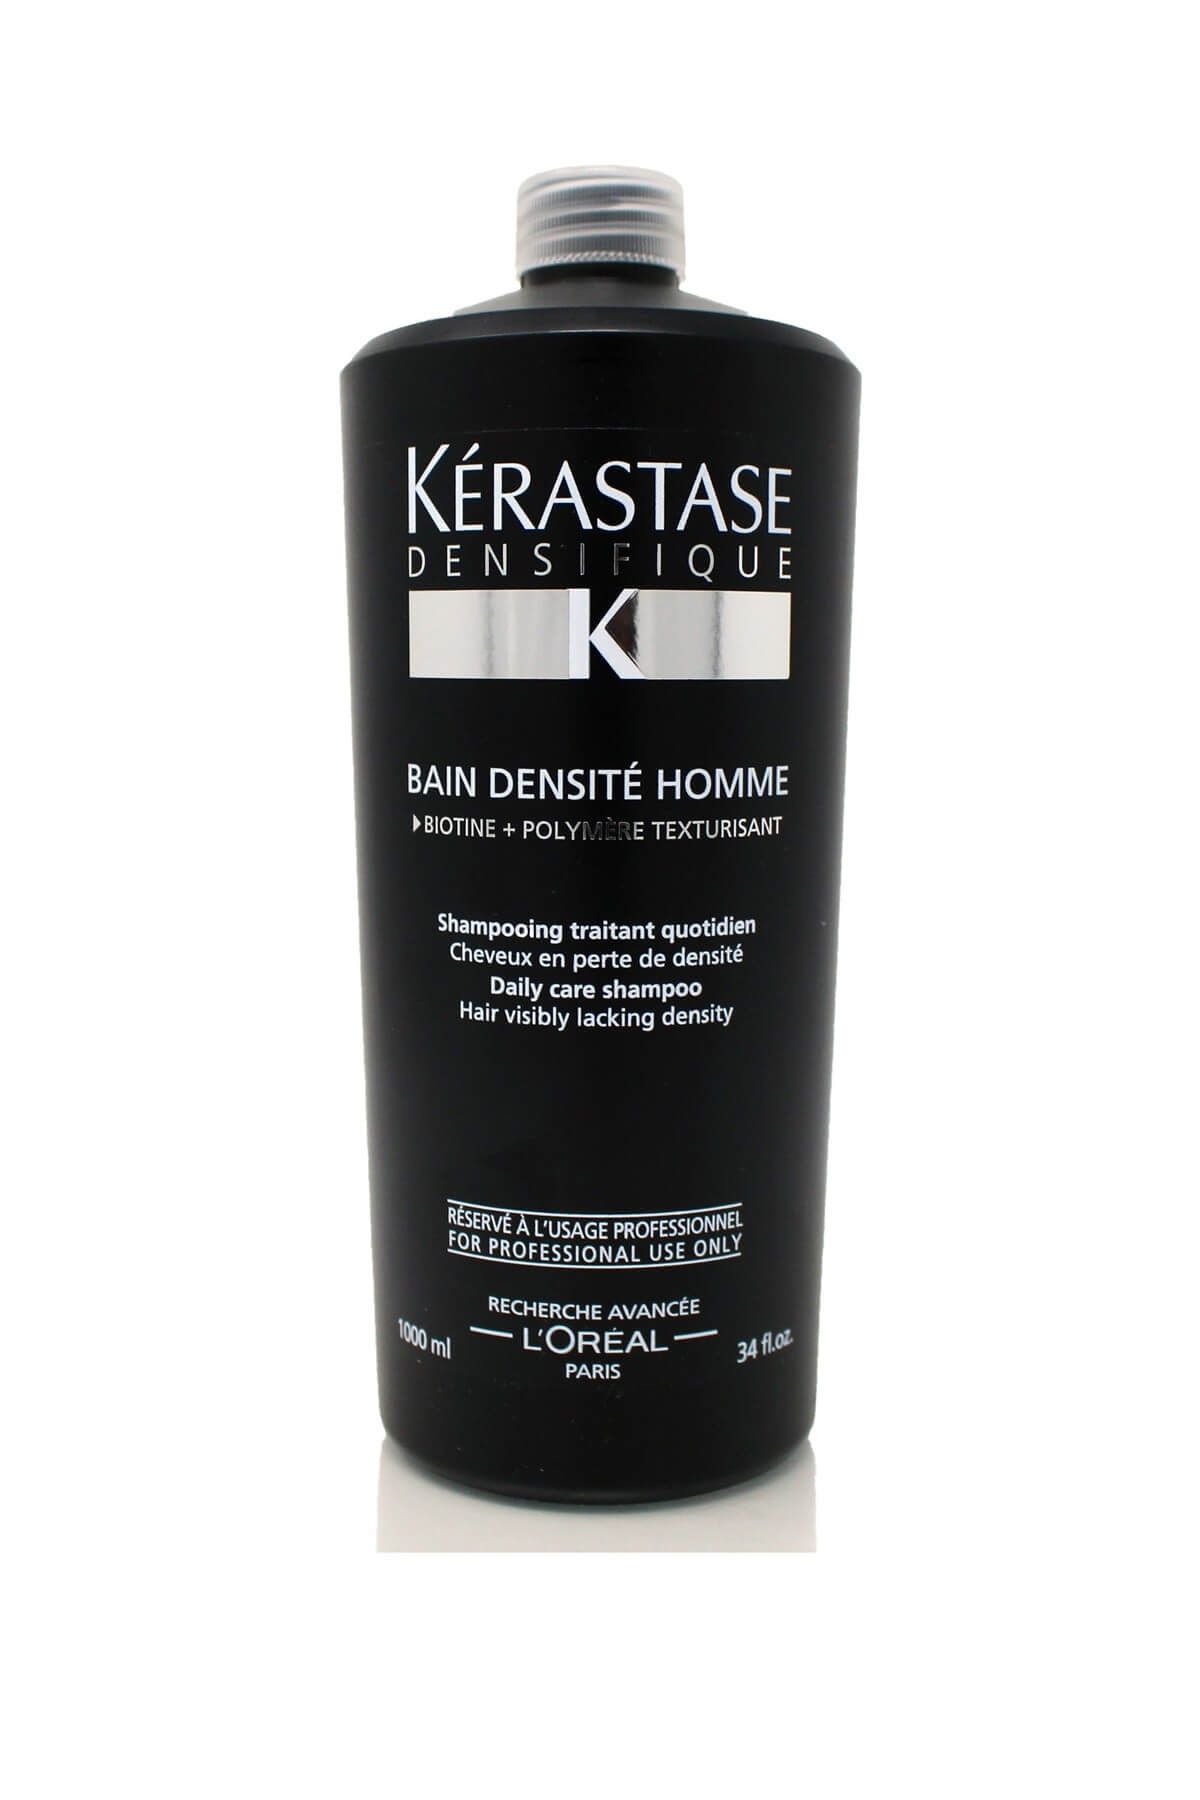 Kerastase Erkekler için Özel Dökülme Karşıtı Şampuan 1000 ml - Densifique Bain Homme Şampuan 3474636356072